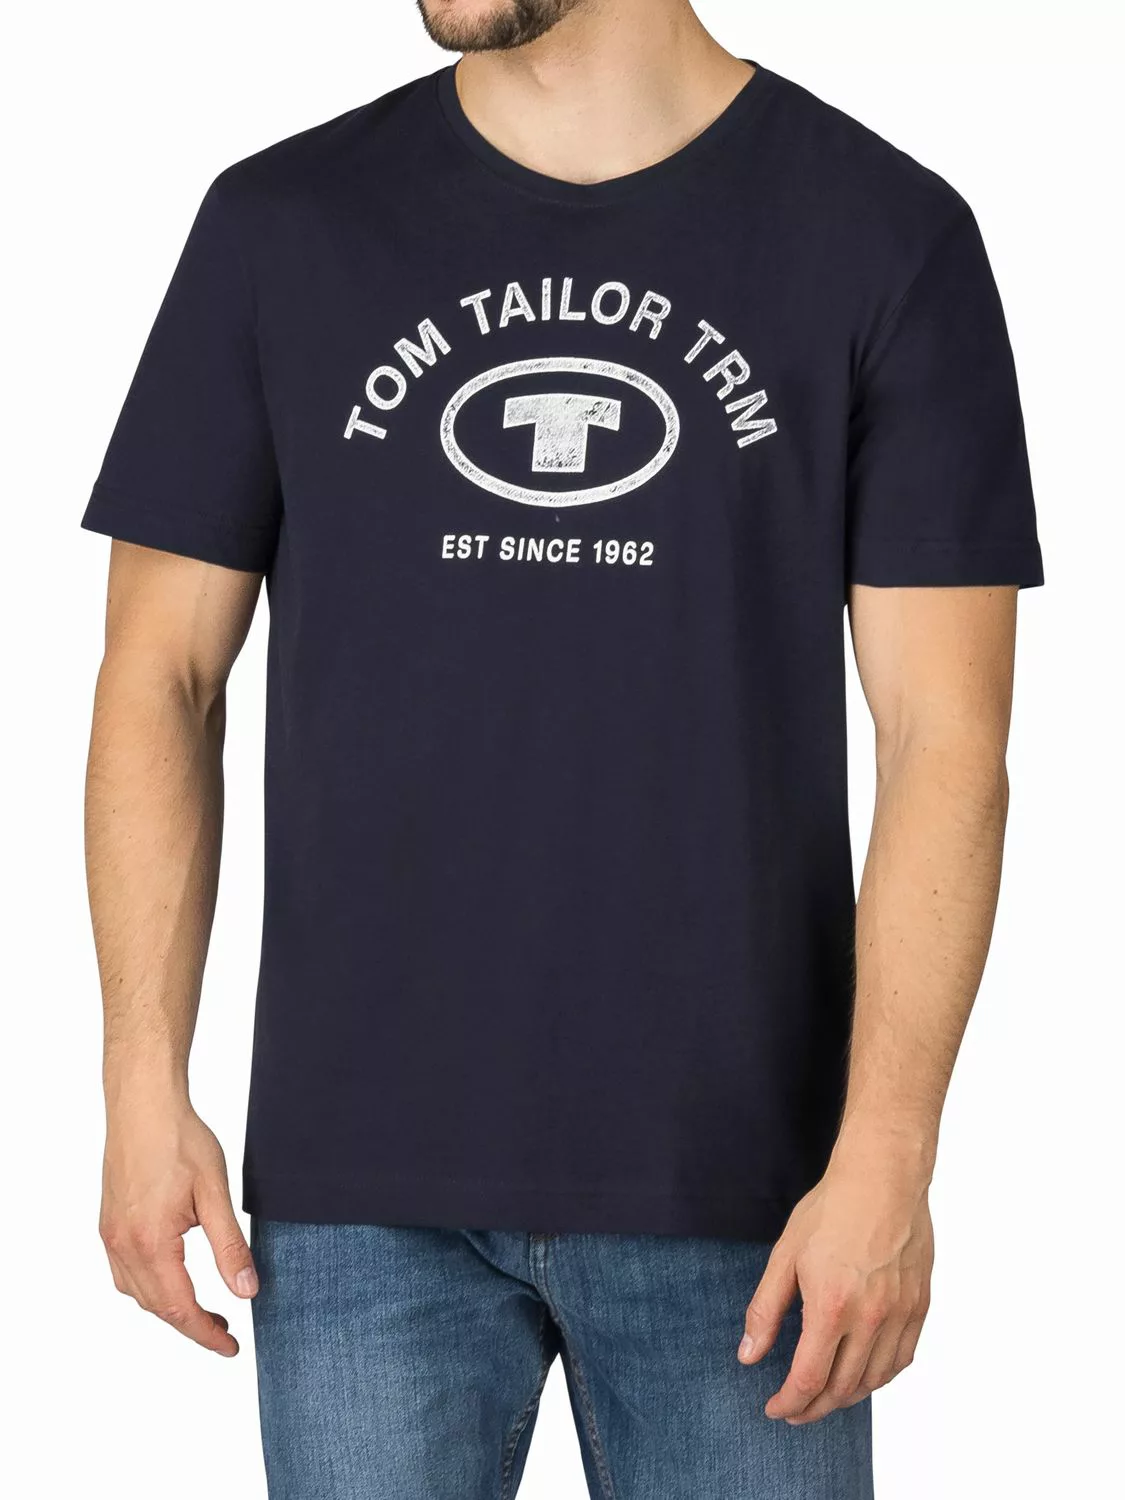 Tom Tailor Tshirt Herren Baumwolle Regular Fit 4er Pack günstig online kaufen